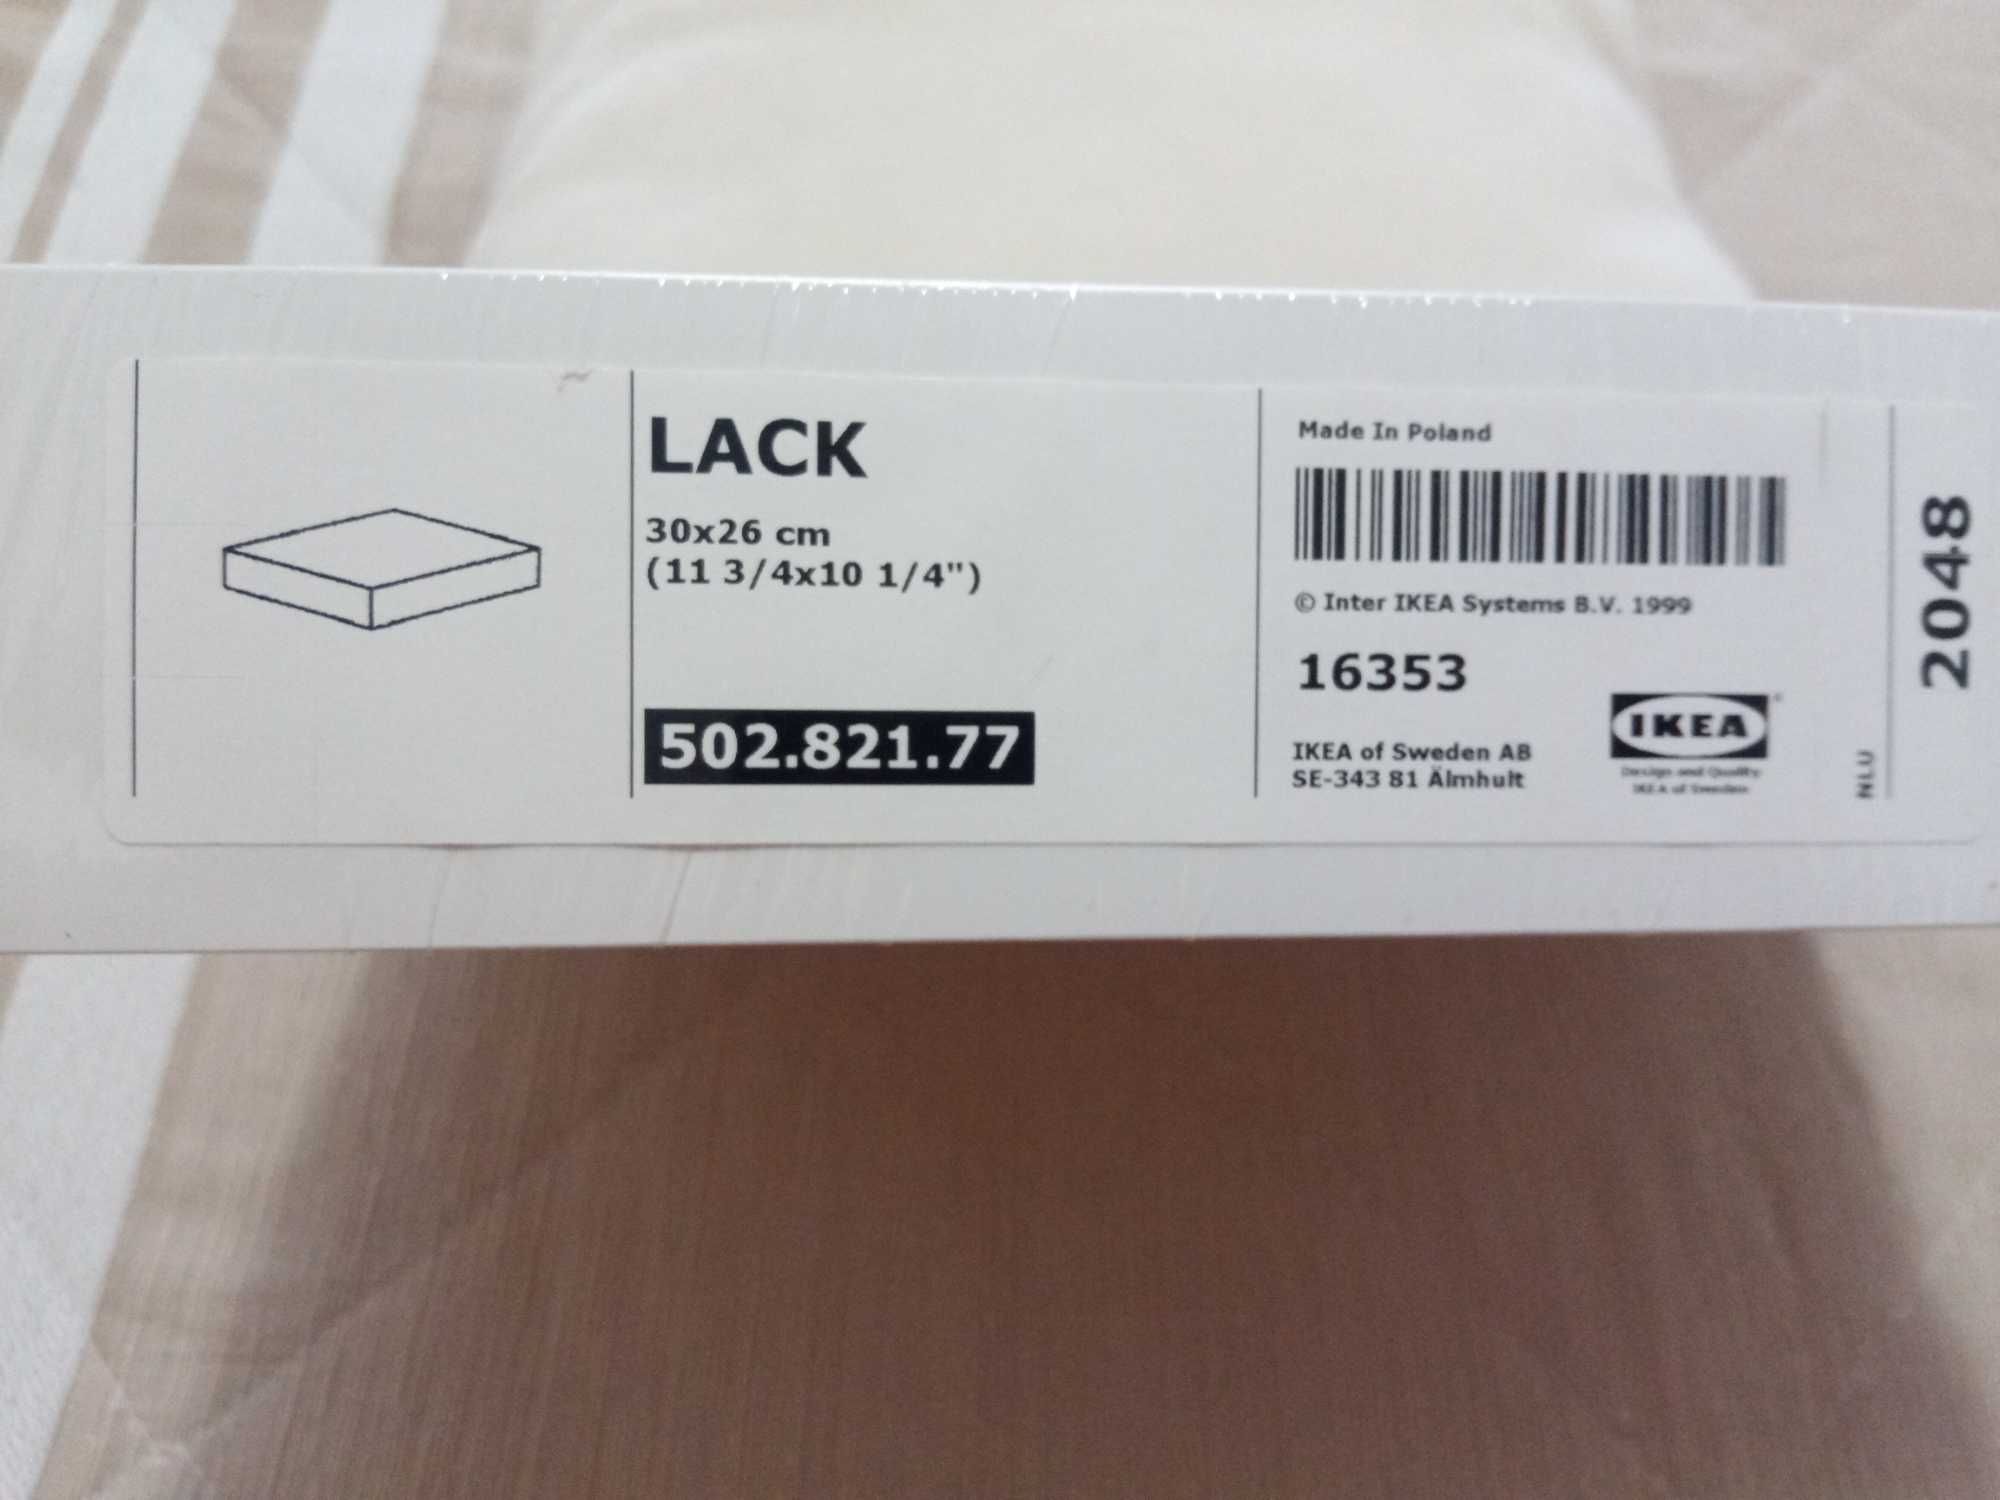 Prateleira do IKEA,modelo LACK,com dimensão de 30x26 cm.Nova.